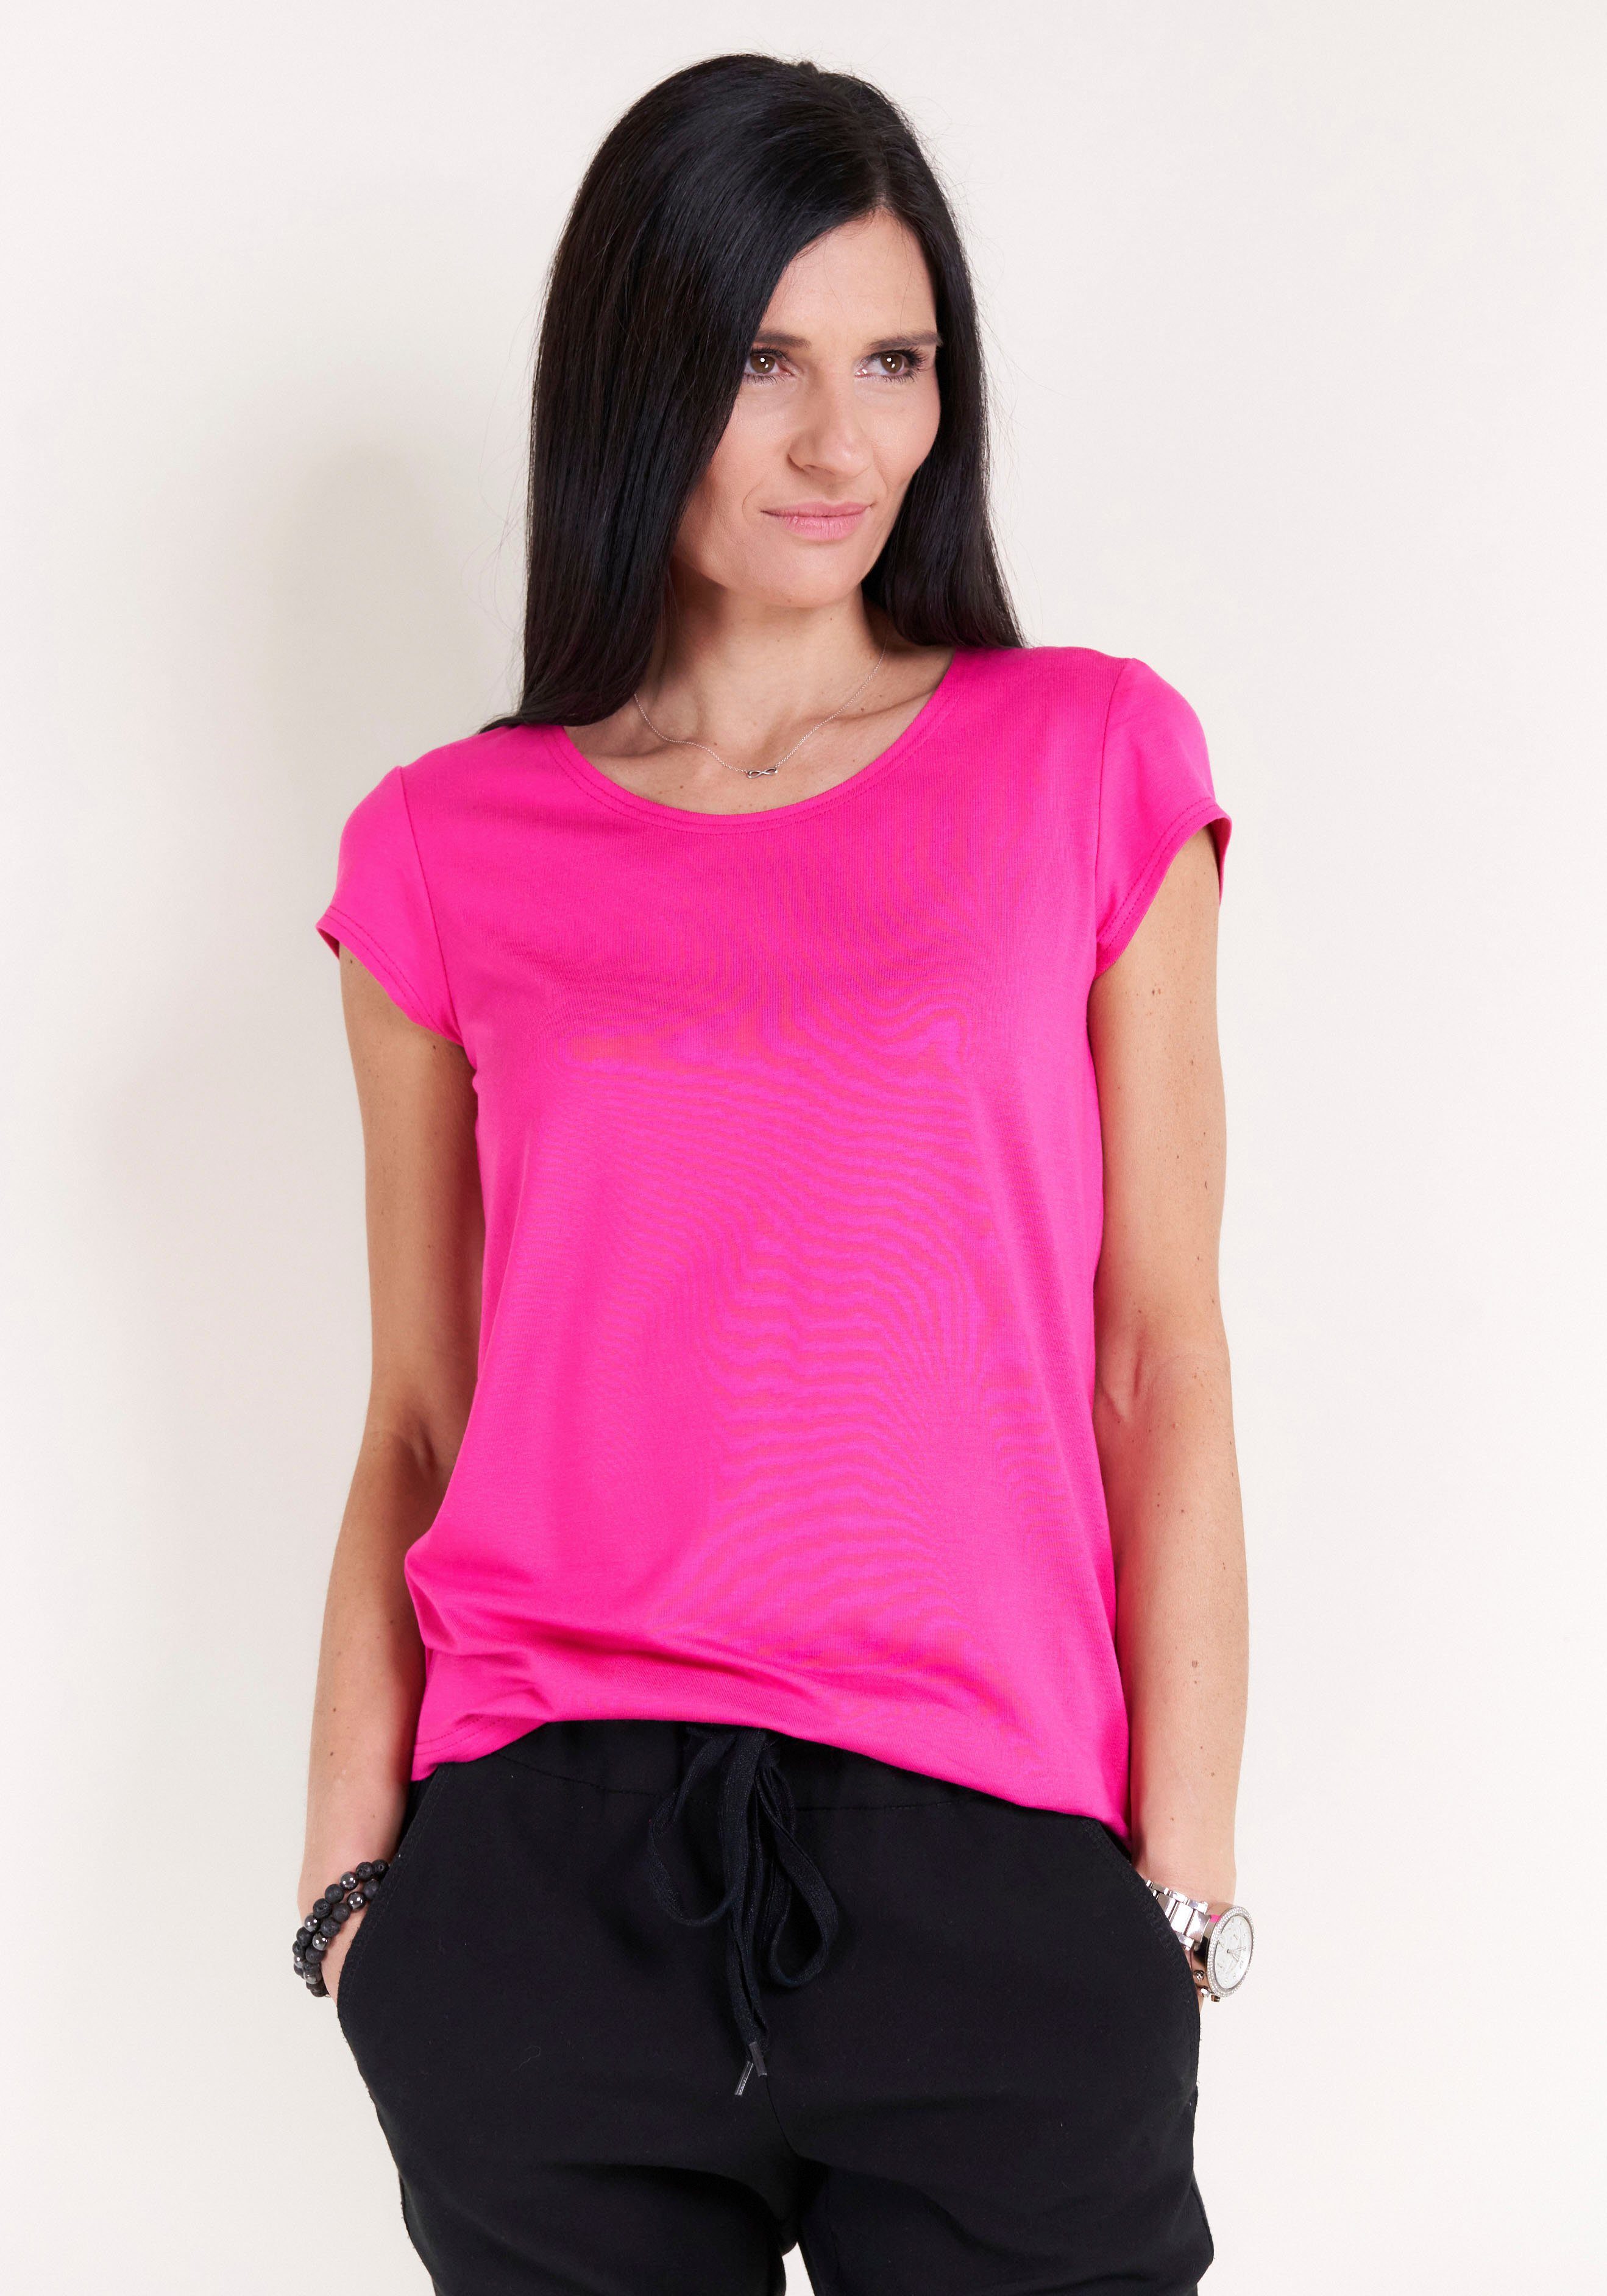 Kappenärmel, IN T-Shirt Moden Seidel pink MADE Seidel mit Moden GERMANY